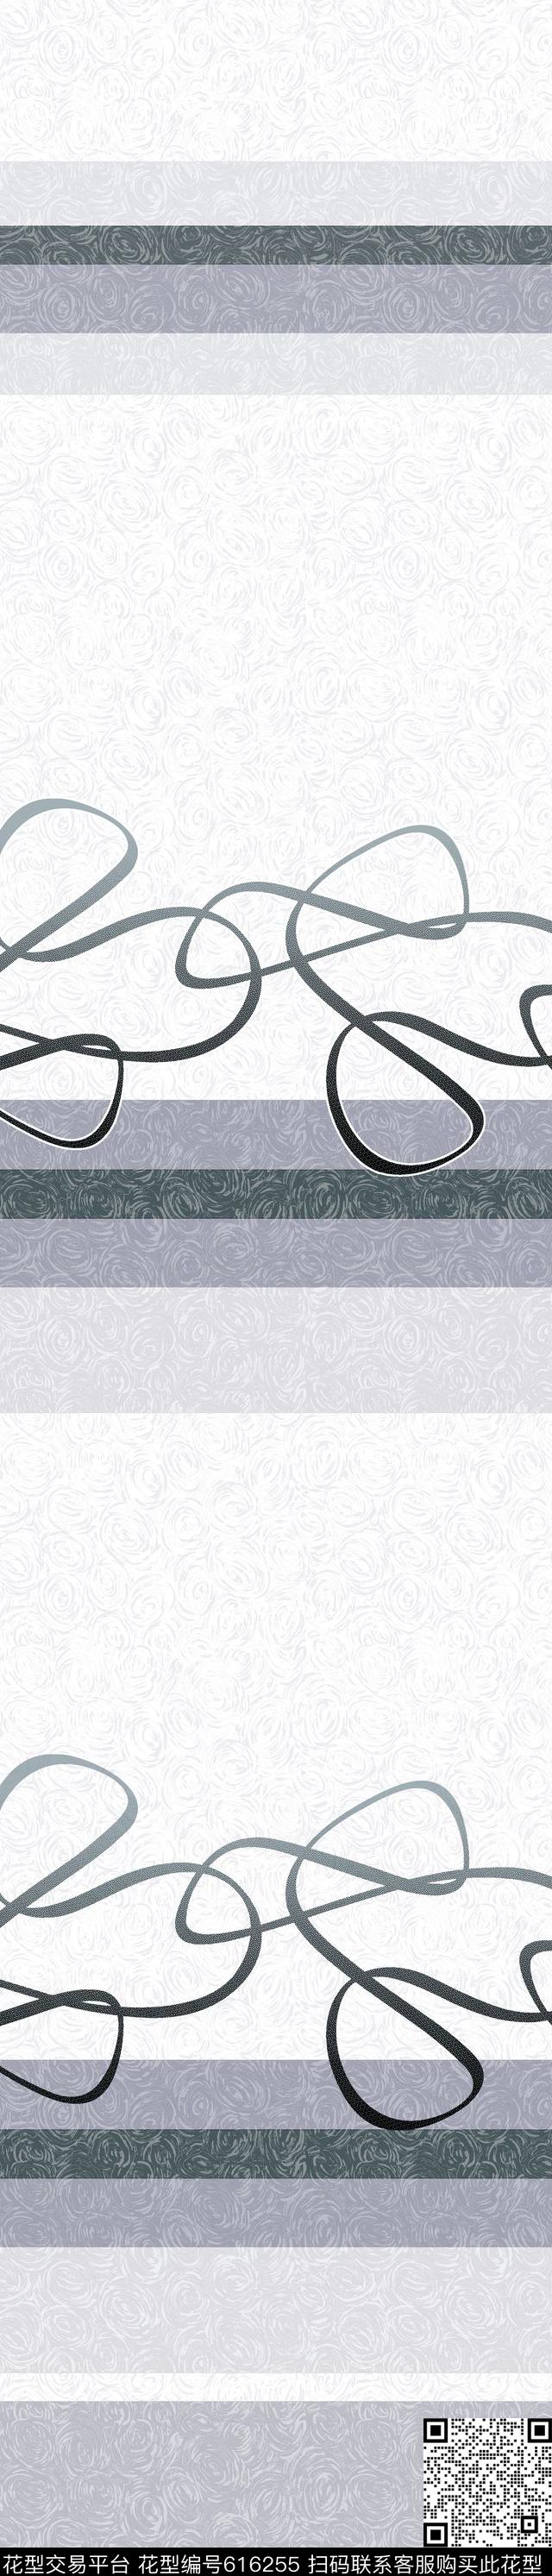 YJH130305f.jpg - 616255 - 窗帘 - 传统印花花型 － 窗帘花型设计 － 瓦栏